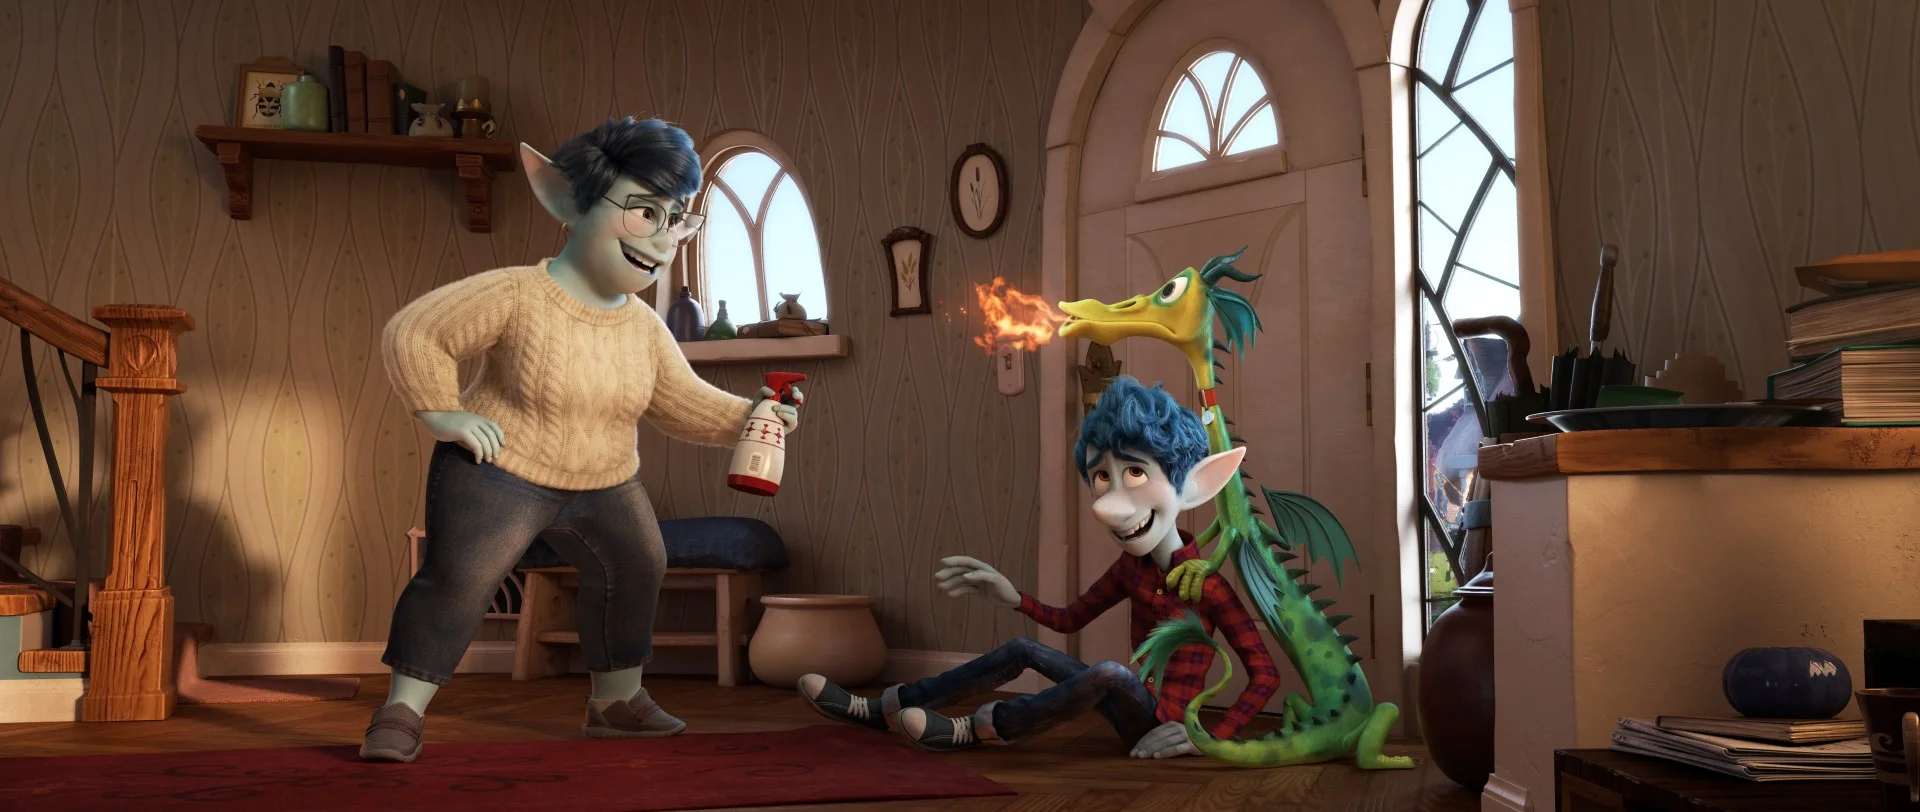 Pixar показала первый трейлер мультфильма Onward - фото 1